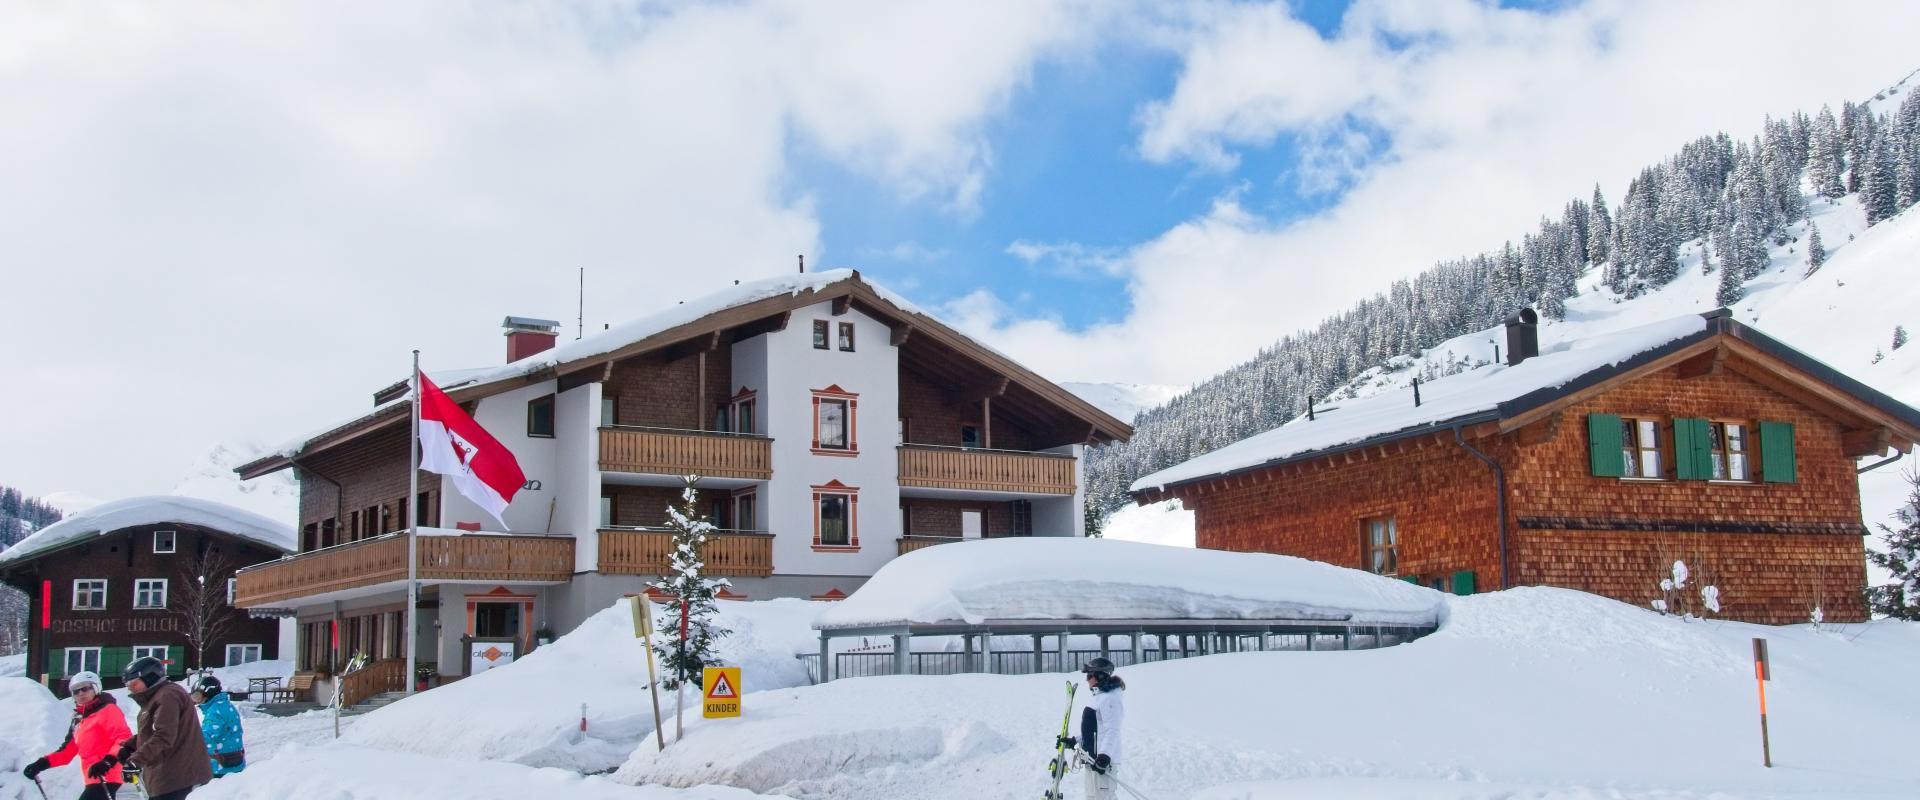 Winter Alphorn in Zug